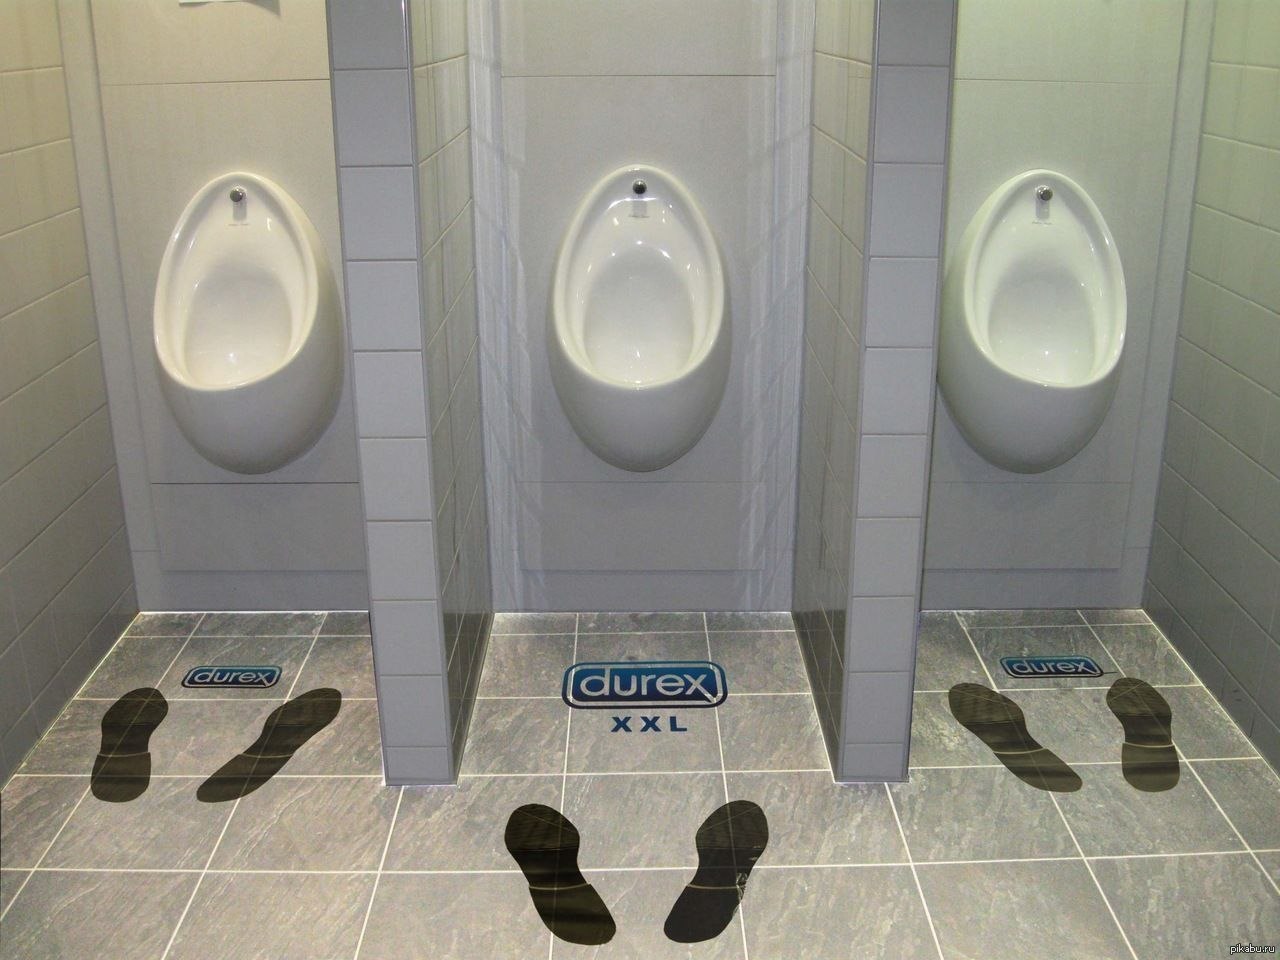 Direx x. Креативный туалет. Креативная реклама презервативов. Самый креативный туалет. Креативная реклама Durex.